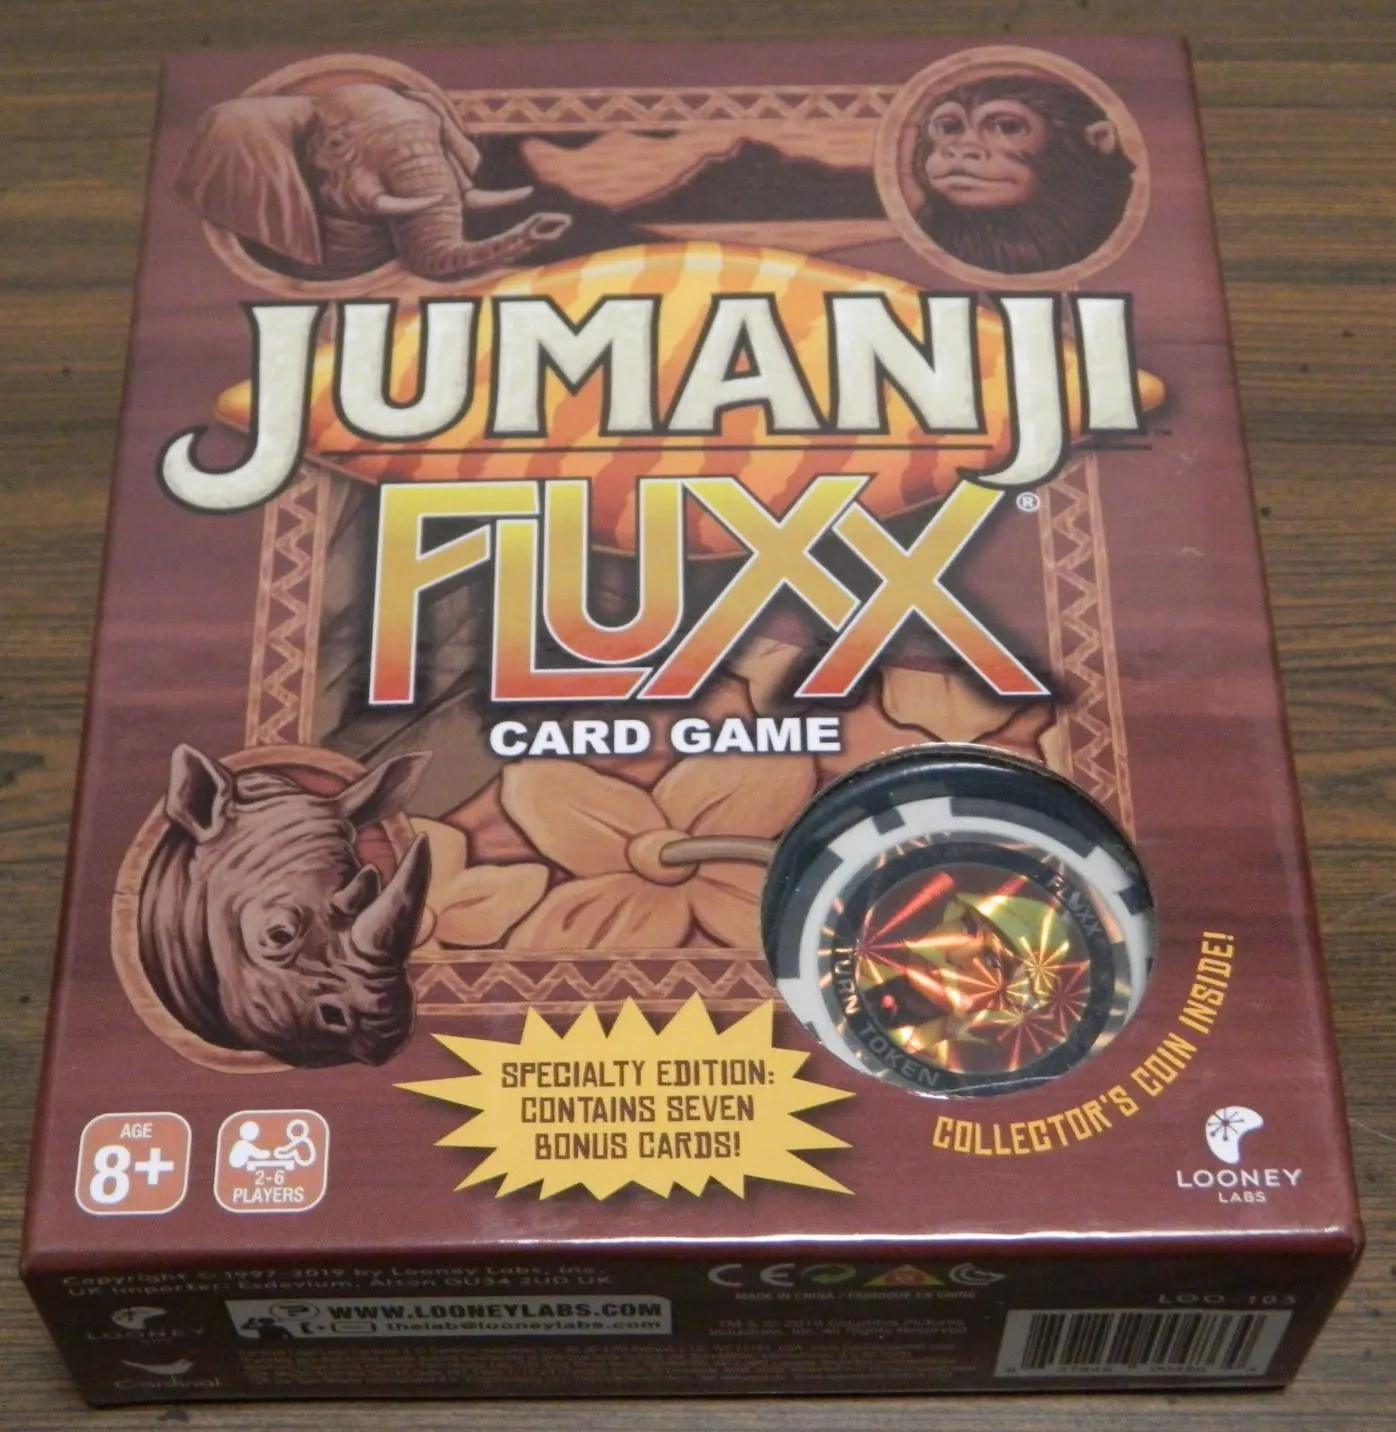 Box for Jumanji Fluxx